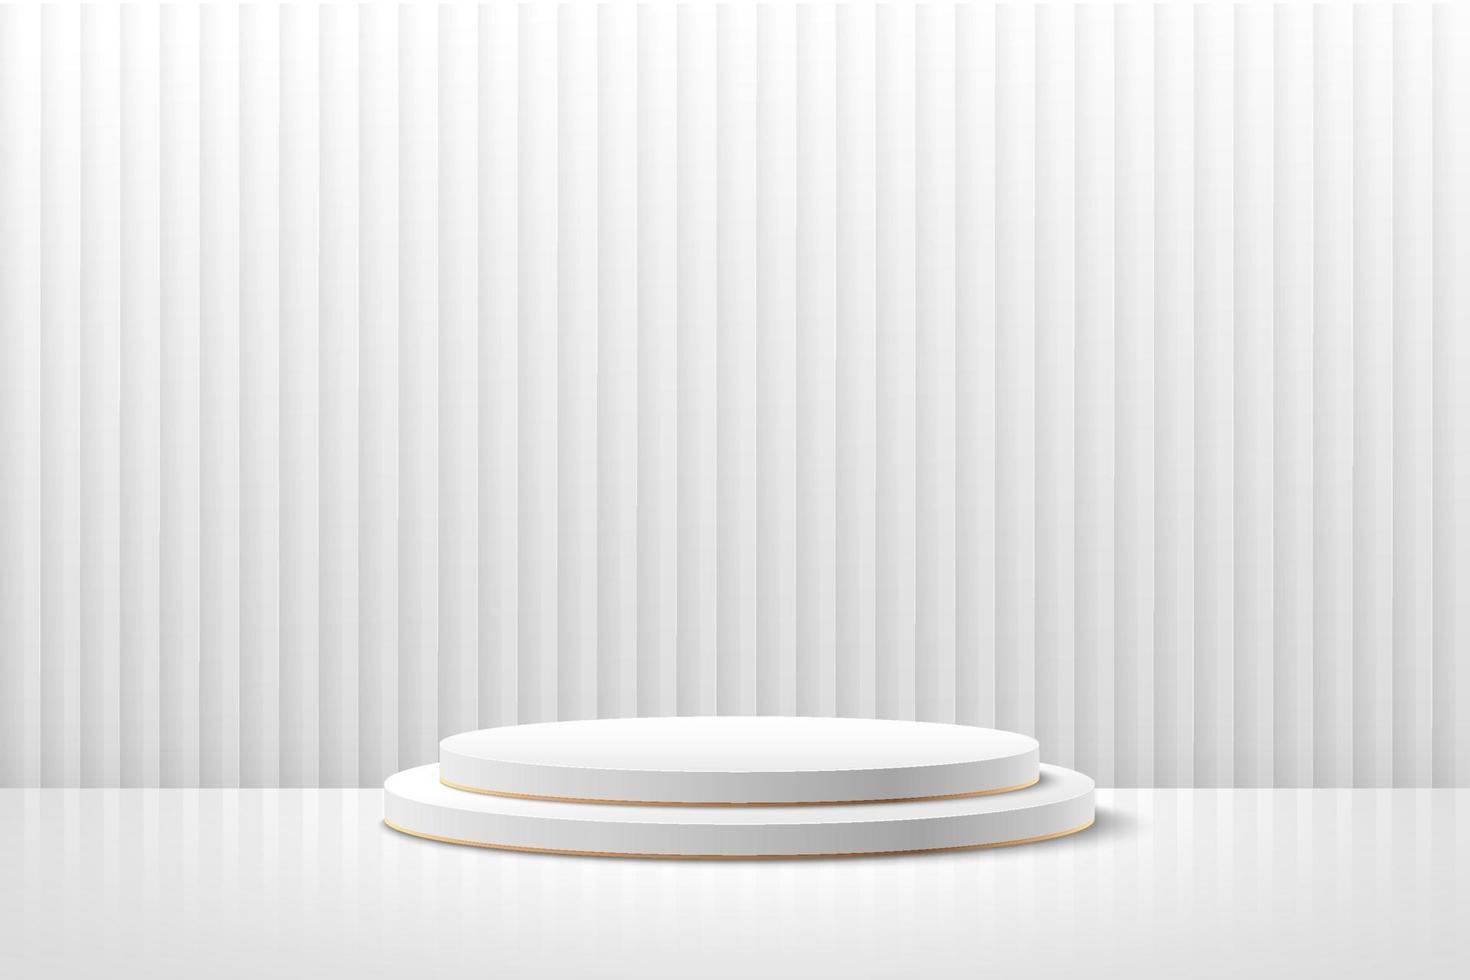 abstracte ronde display voor product op website in modern design. achtergrondweergave met podium en minimale witte de muurscène van de laagtextuur, 3d teruggevende geometrische vorm witte en grijze kleur. vector eps10